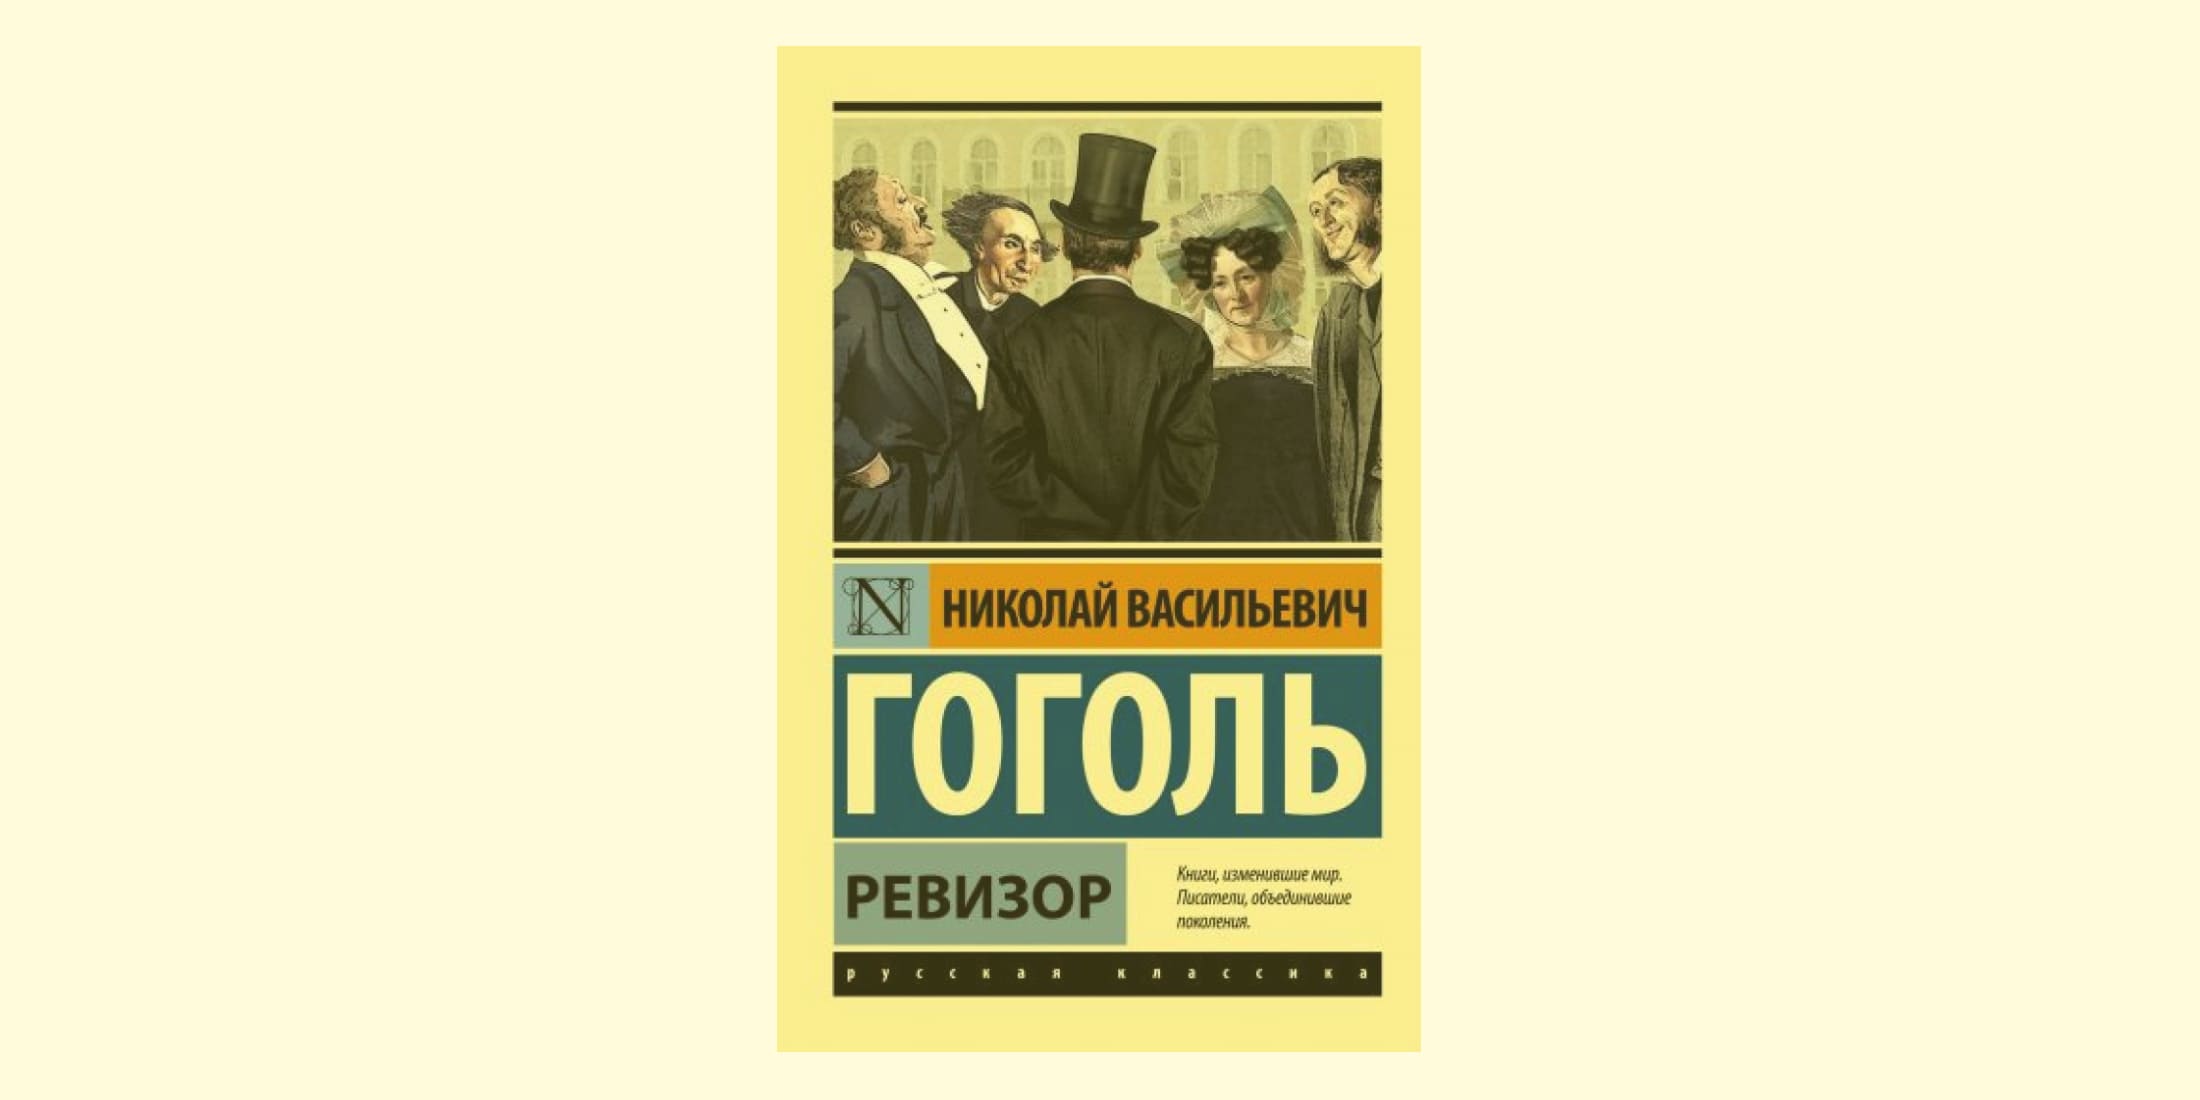 Сочинение Почему чиновники приняли Хлестакова за ревизора в комедии Гоголя?